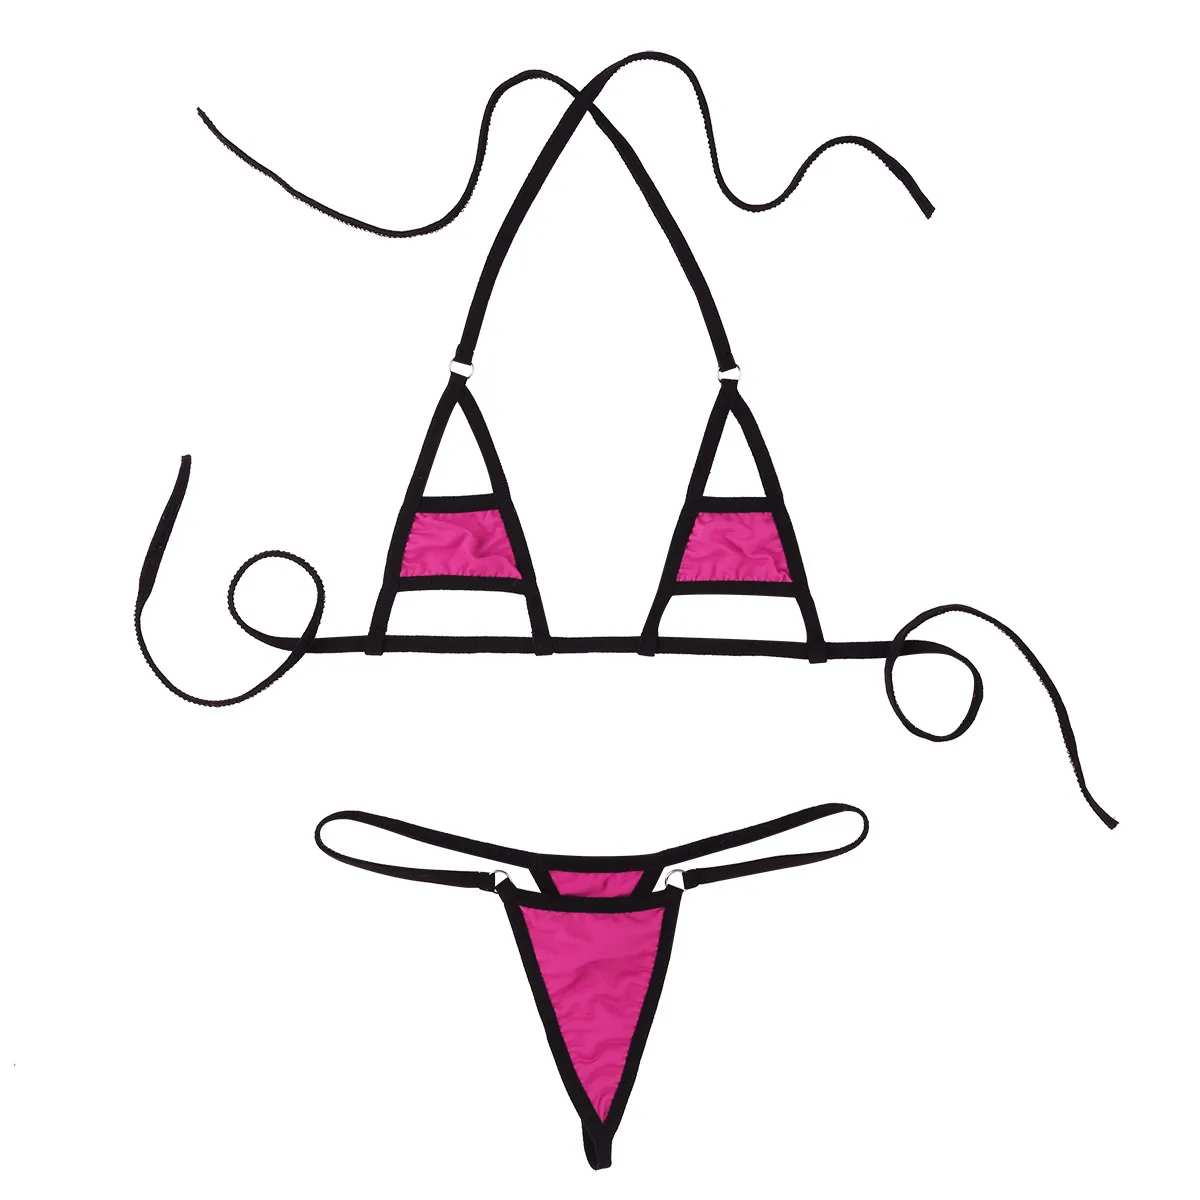 Хит, разноцветный прозрачный мини микро бикини, купальный костюм, женский Экстремальный сексуальный купальник, комплект нижнего белья, пляжные костюмы